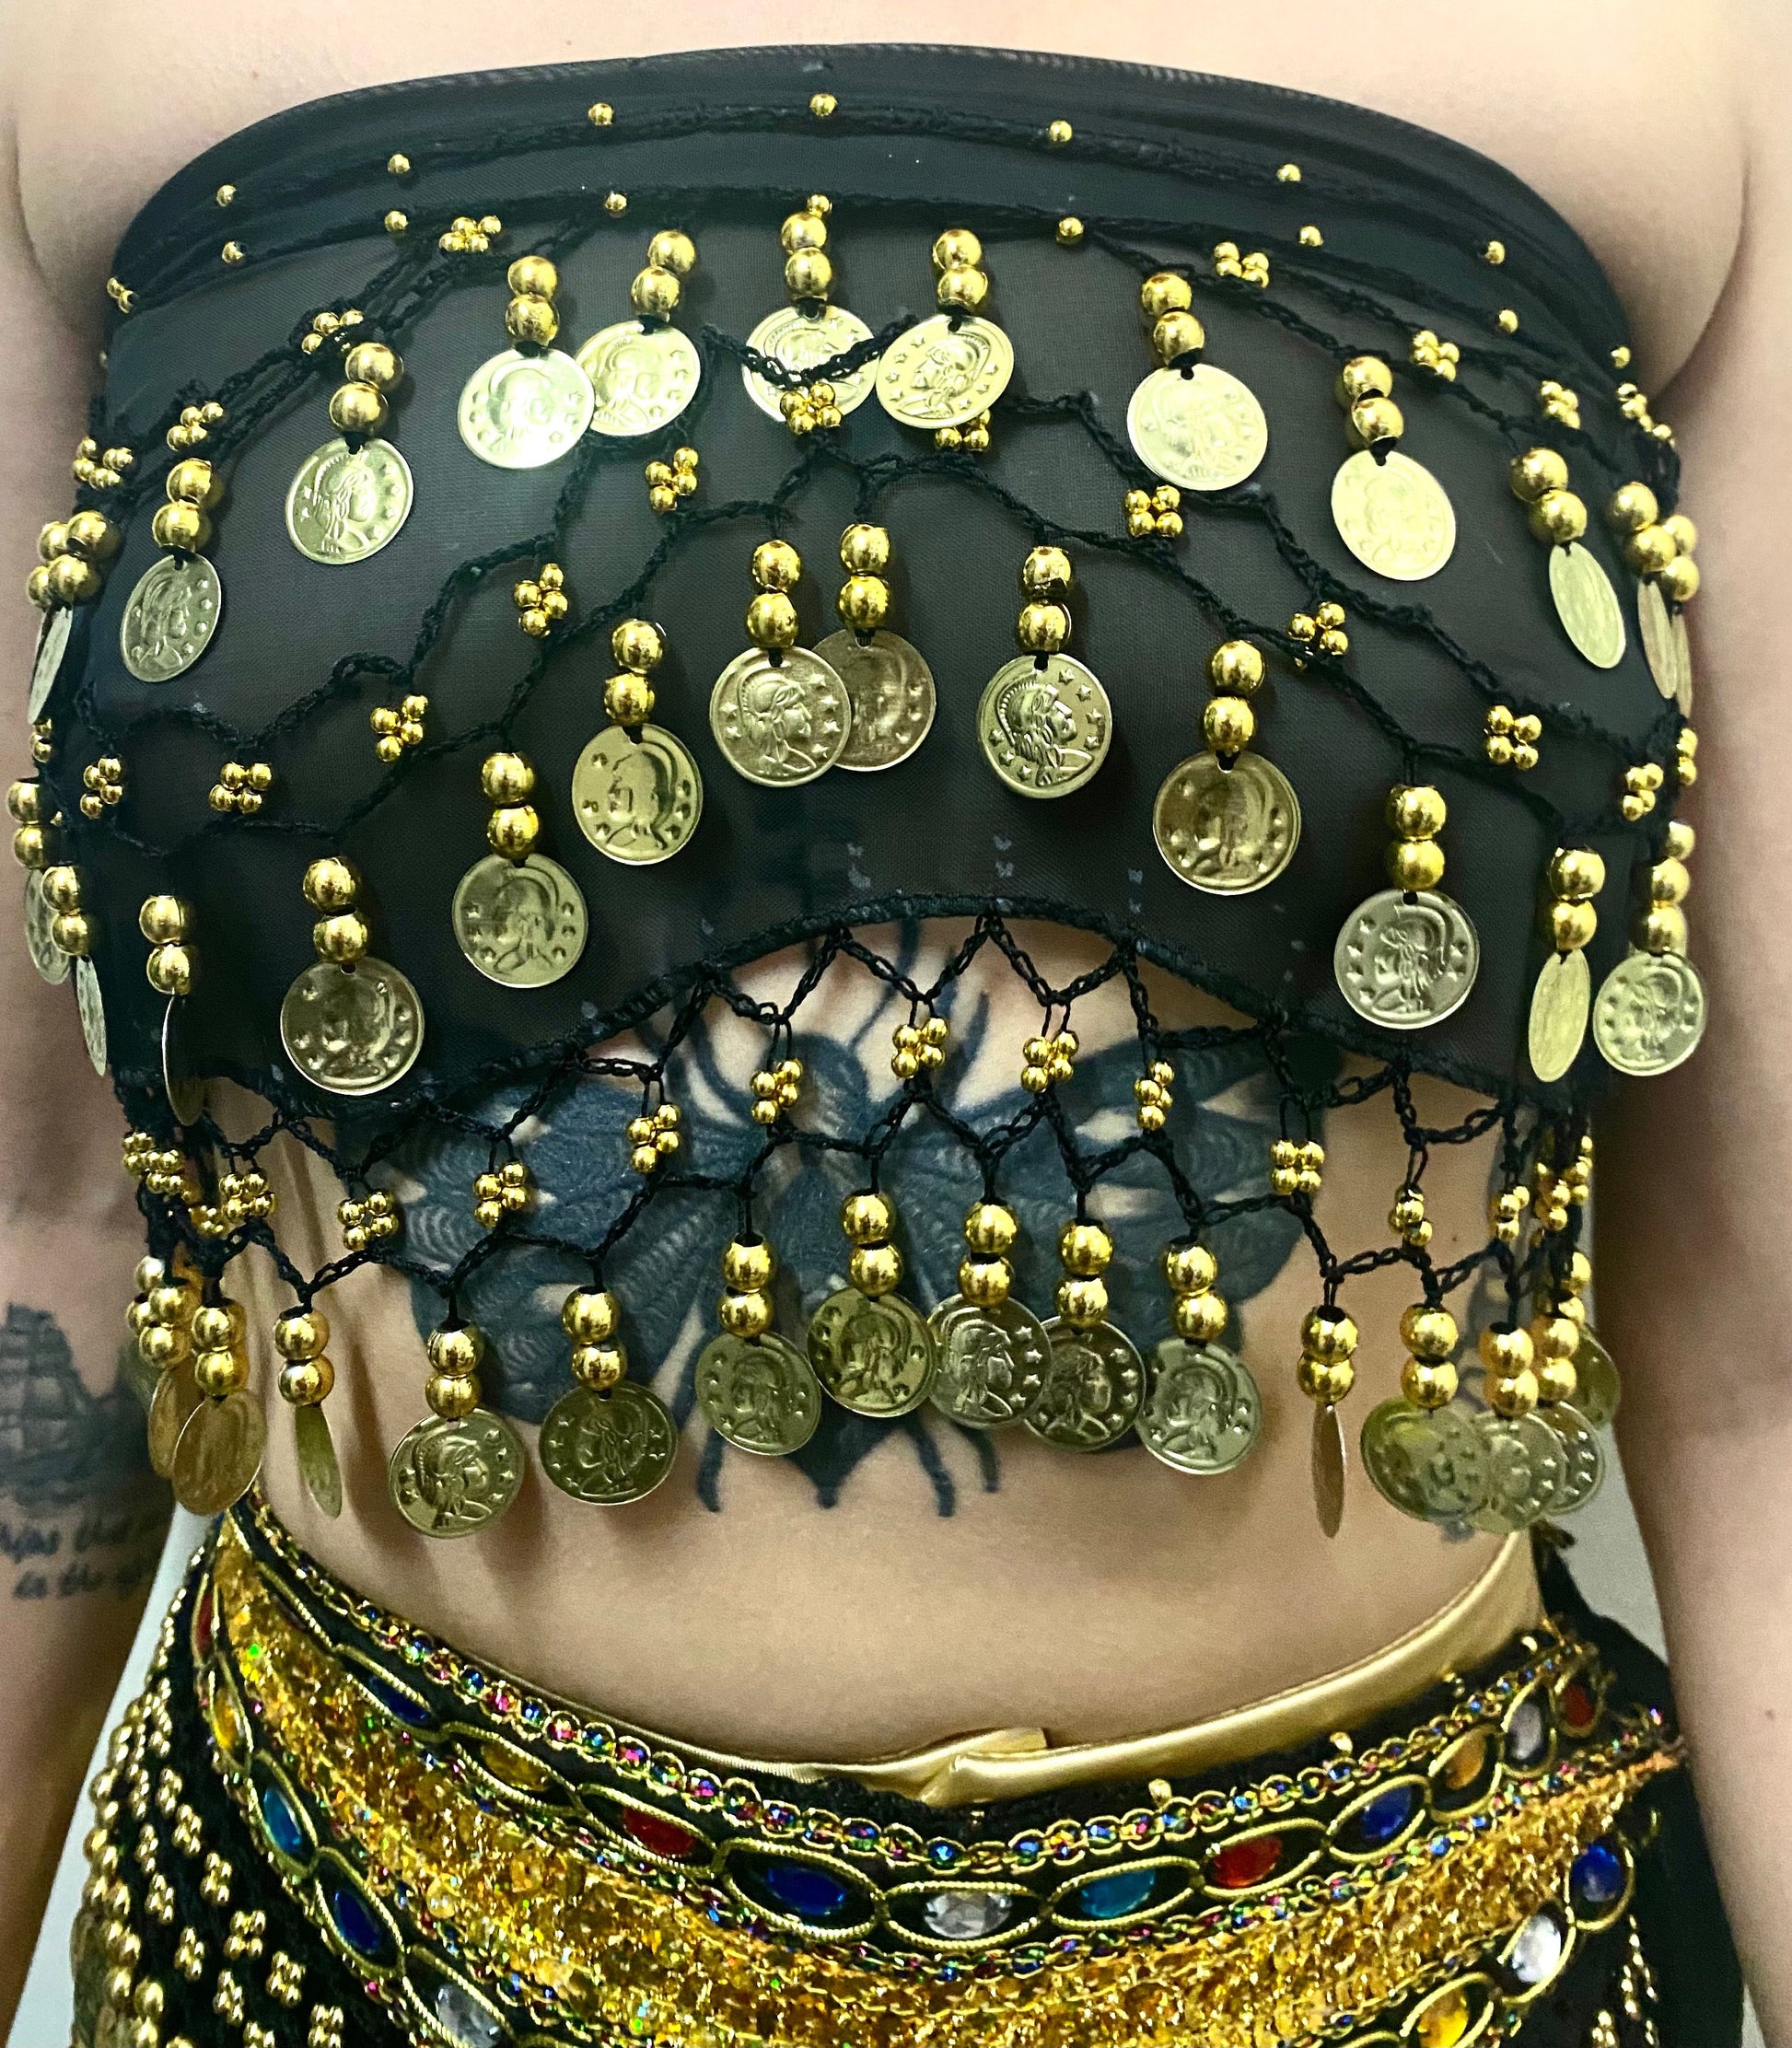 Black and gold tribal bellydance bra + belt set - 67,80 €